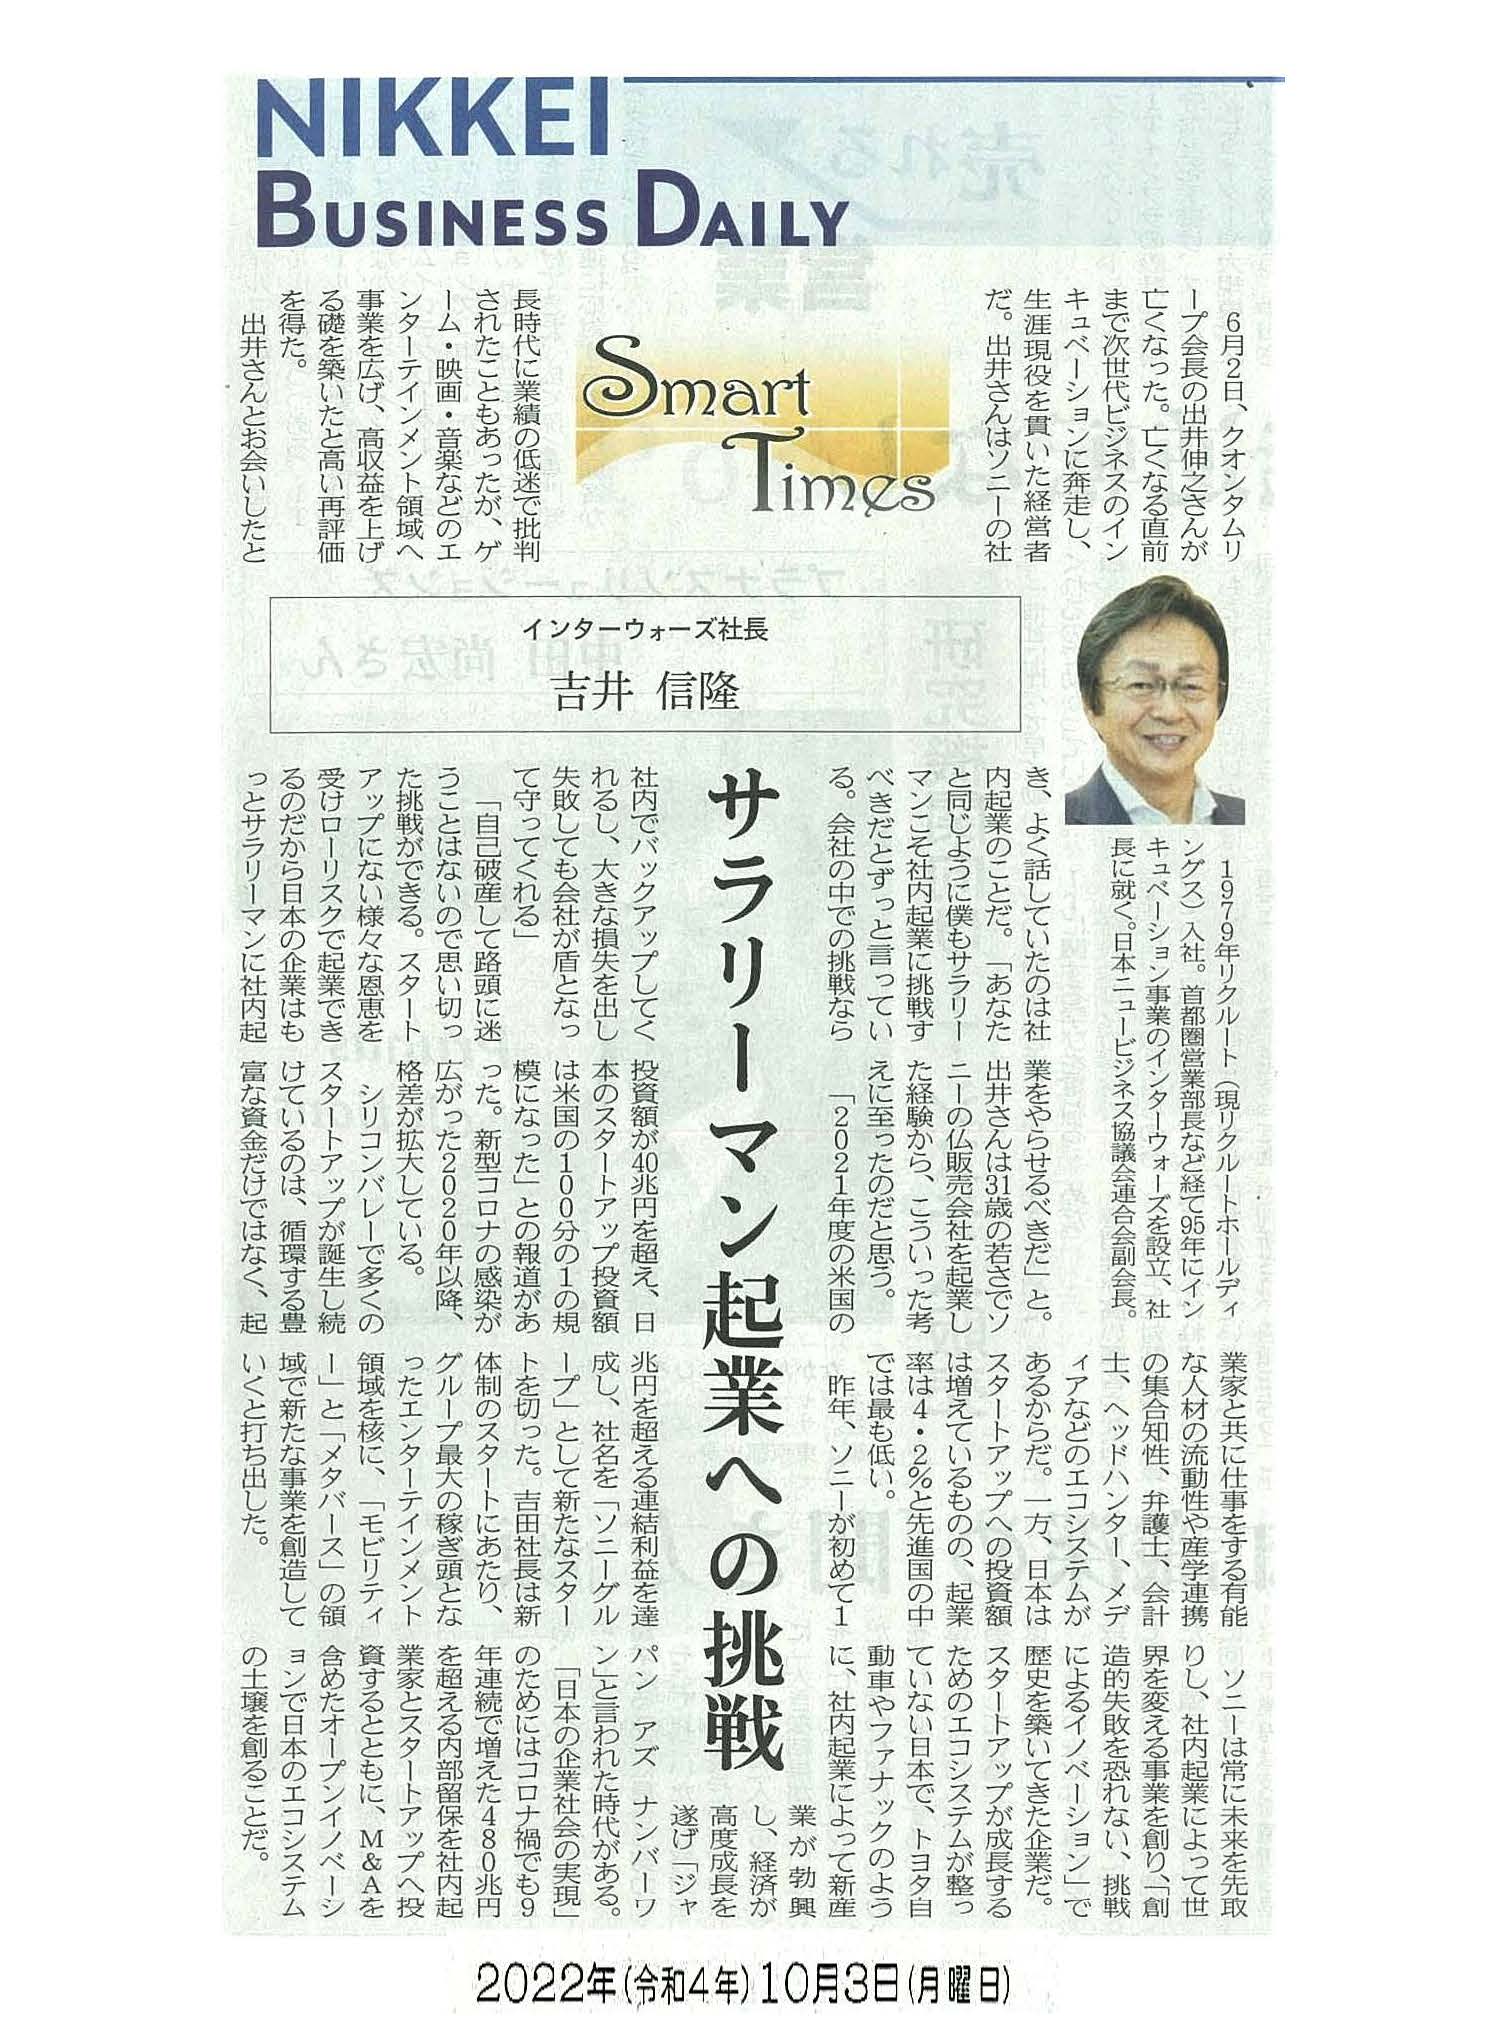 日経産業新聞 Smart Times「サラリーマン起業への挑戦」